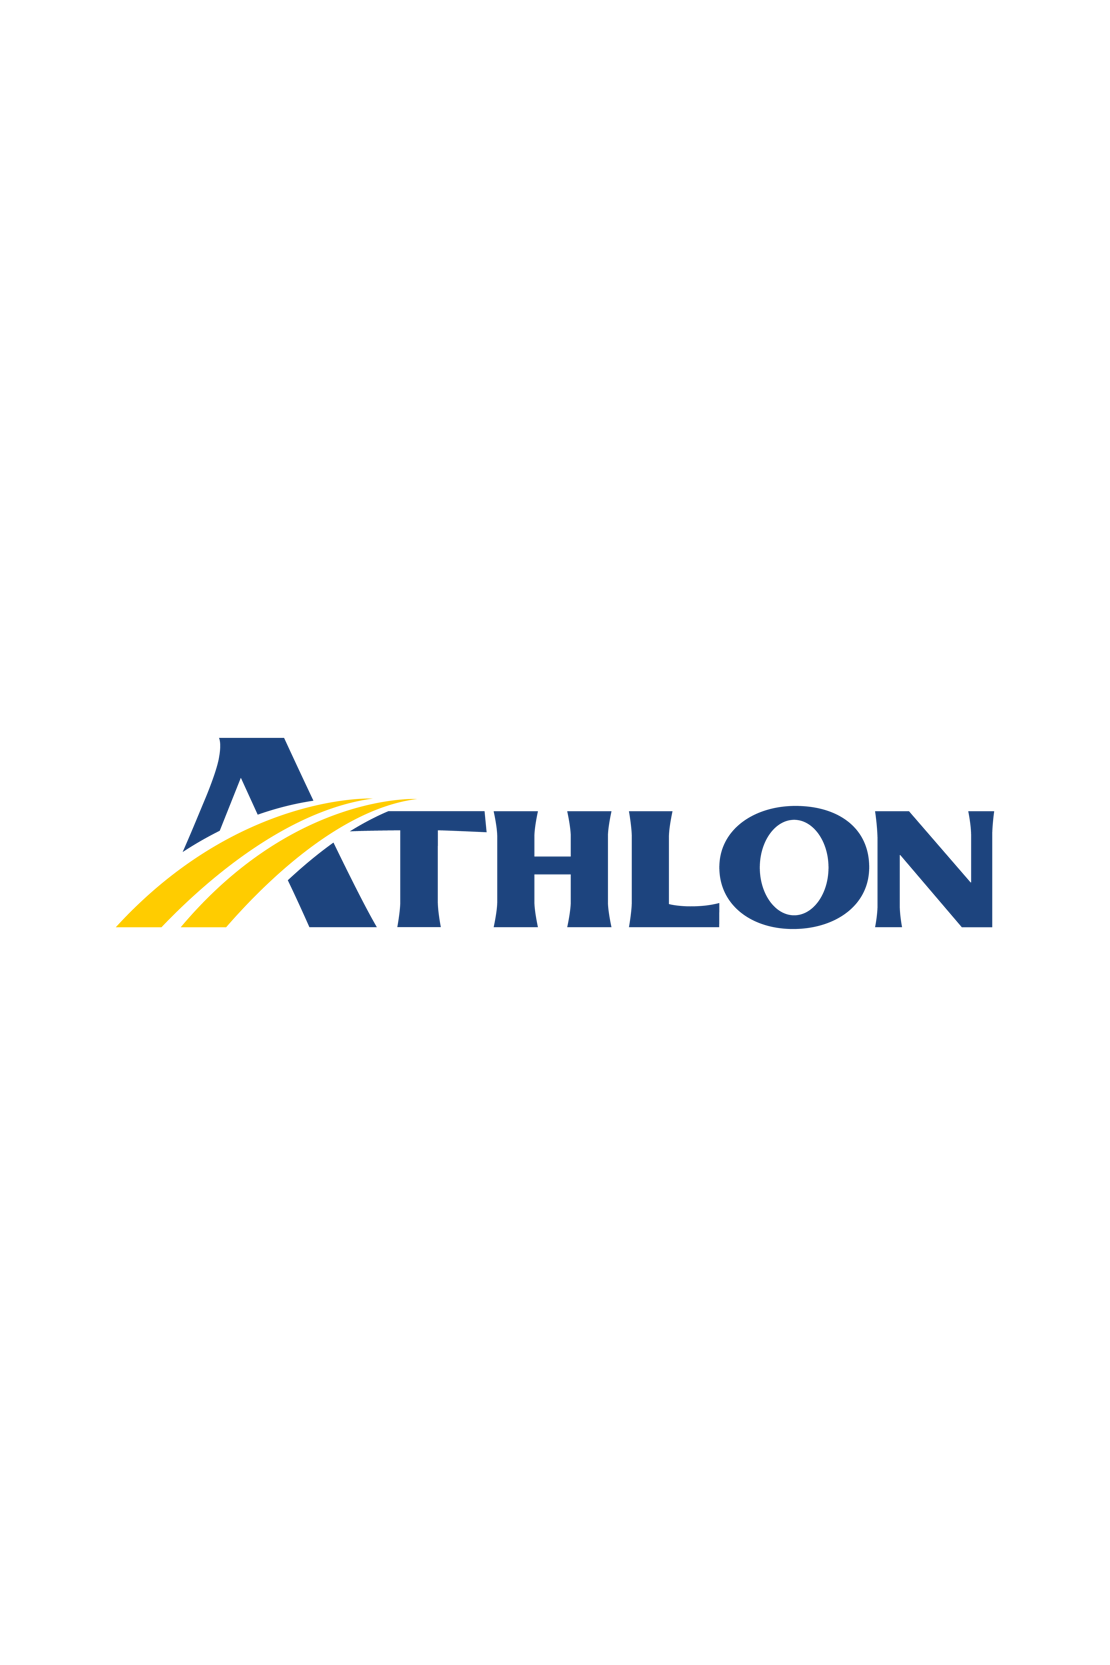 Logo Athlon